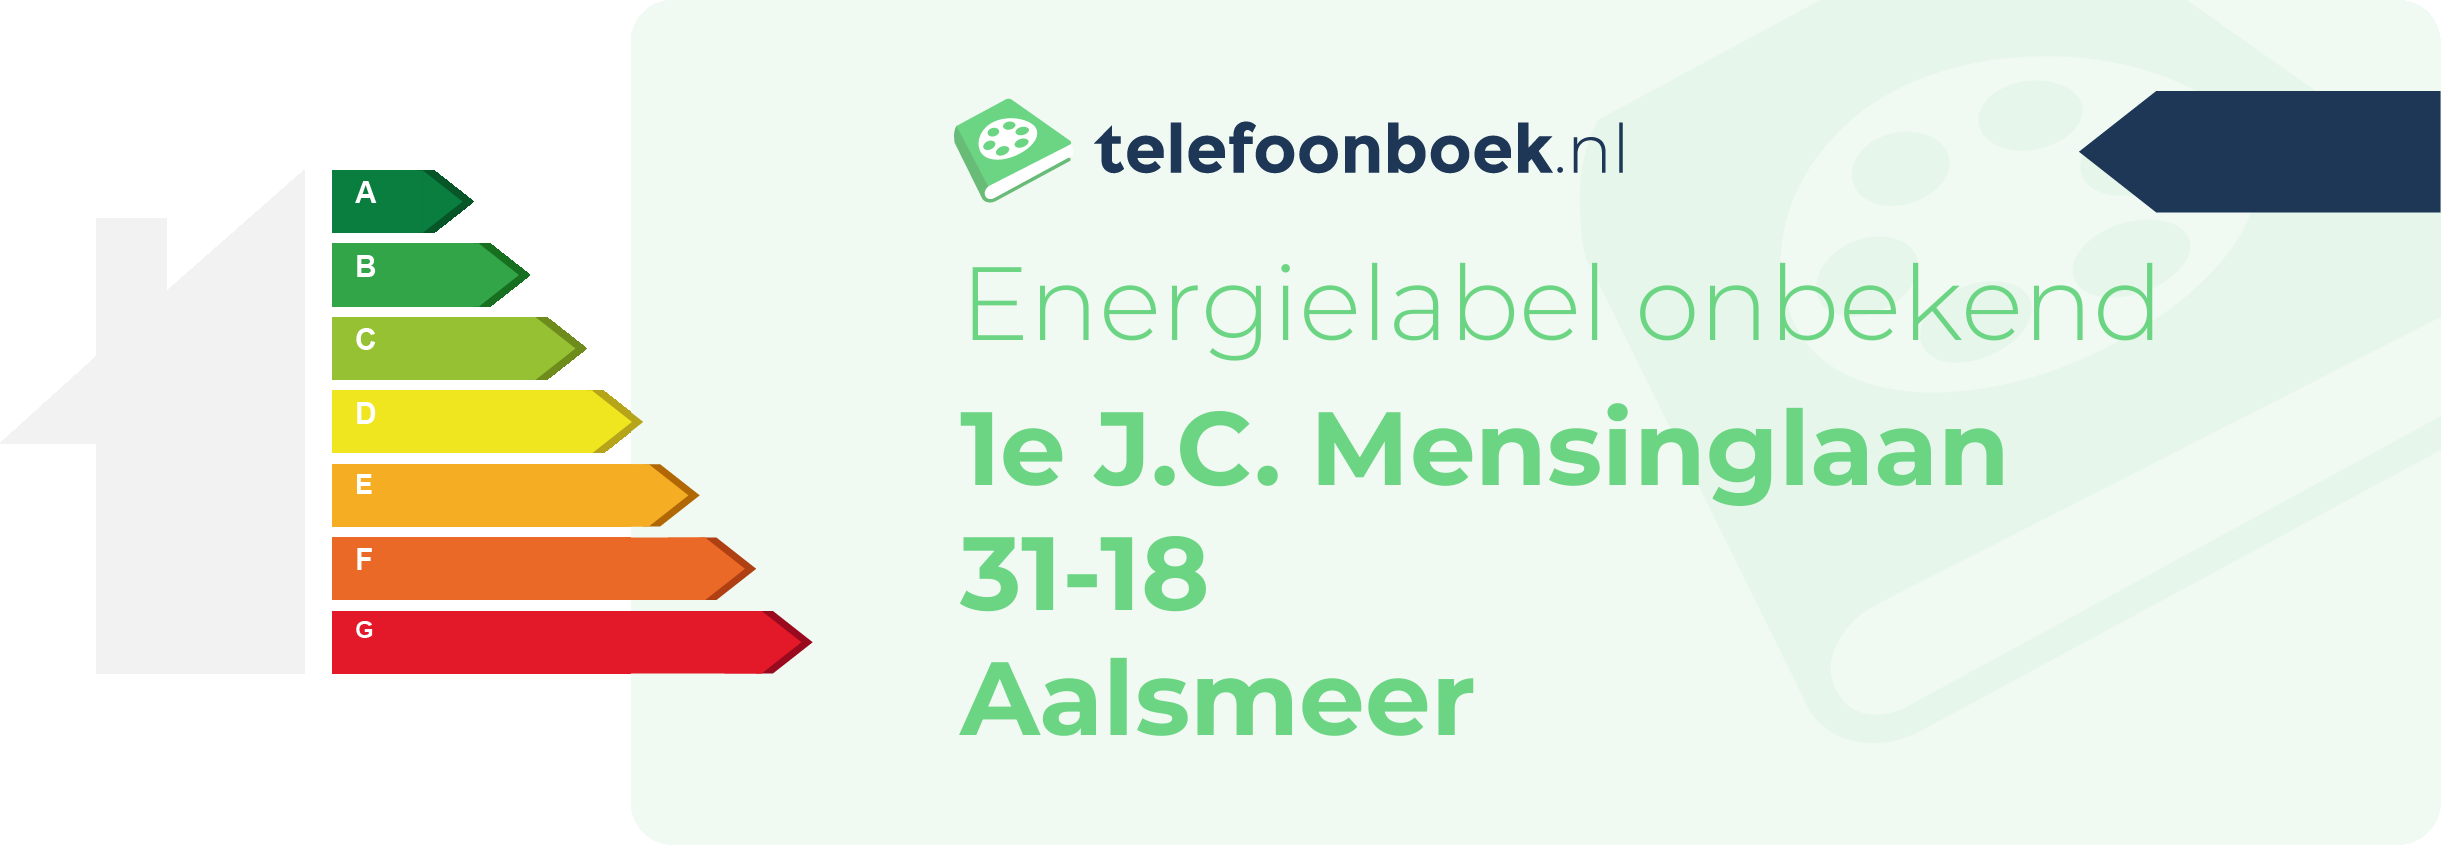 Energielabel 1e J.C. Mensinglaan 31-18 Aalsmeer